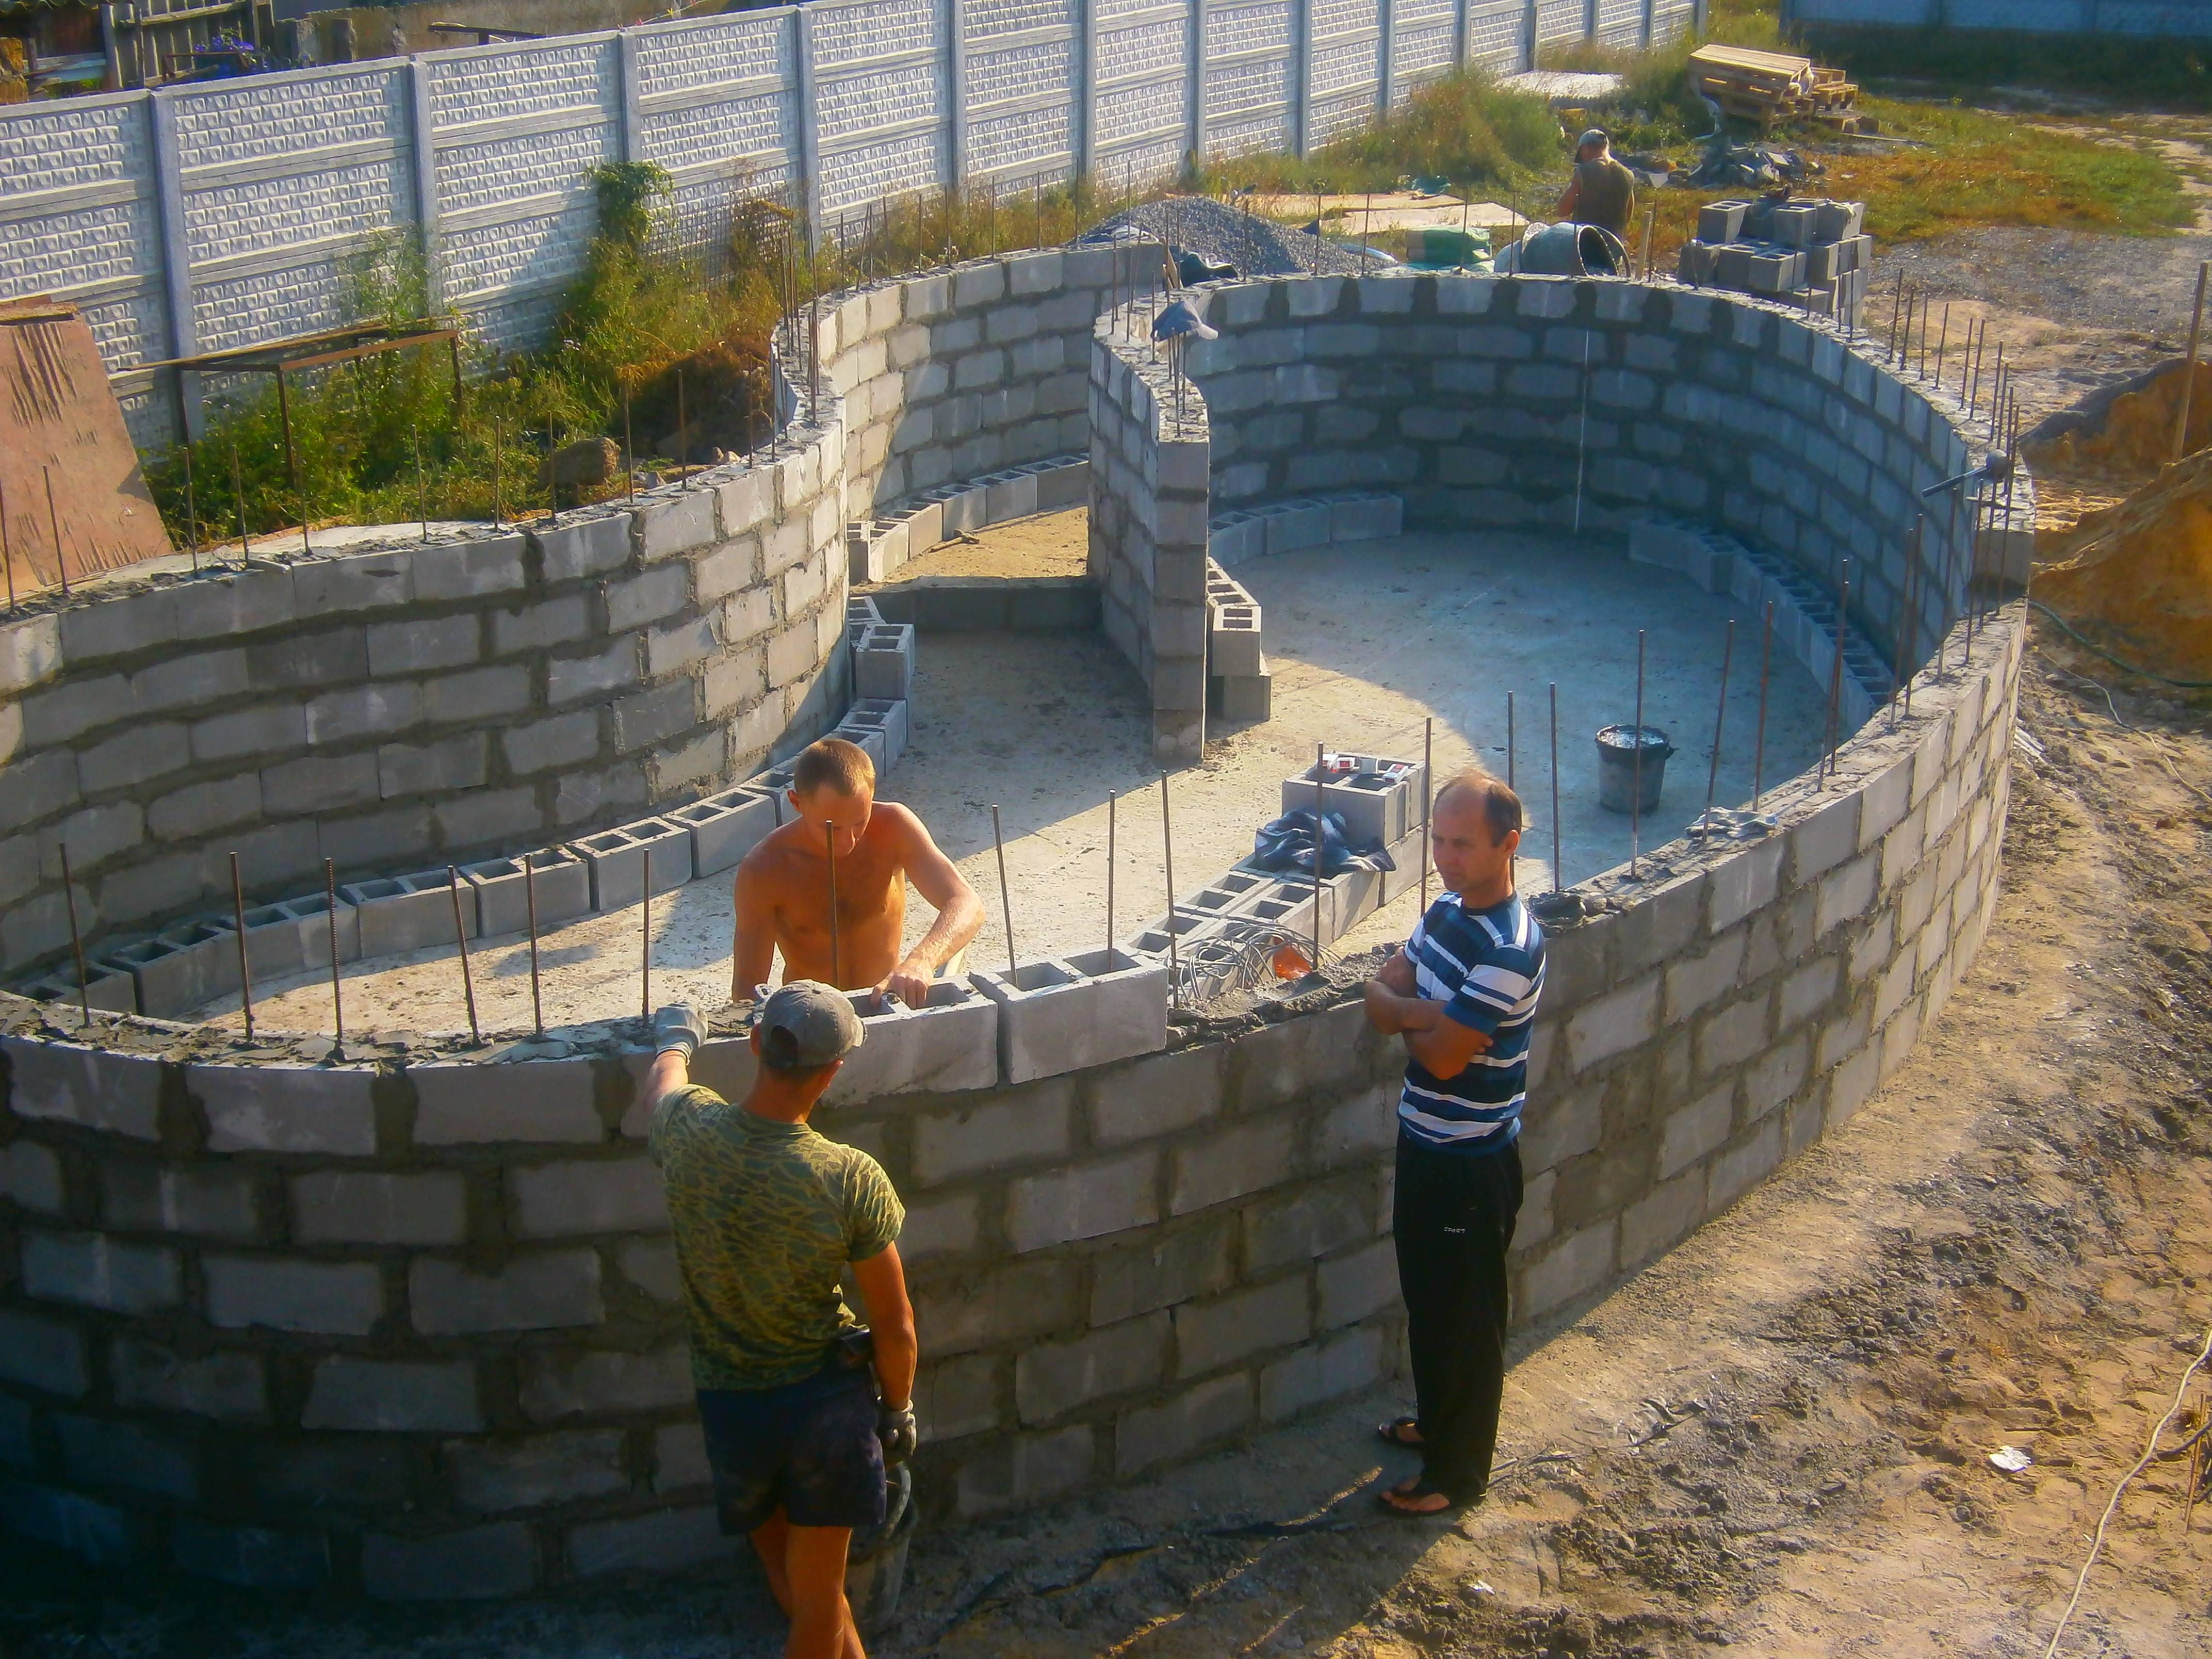 Строительство бассейнов: как построить бассейн своими руками и что для этого необходимо
строительство бассейнов: как построить бассейн своими руками и что для этого необходимо